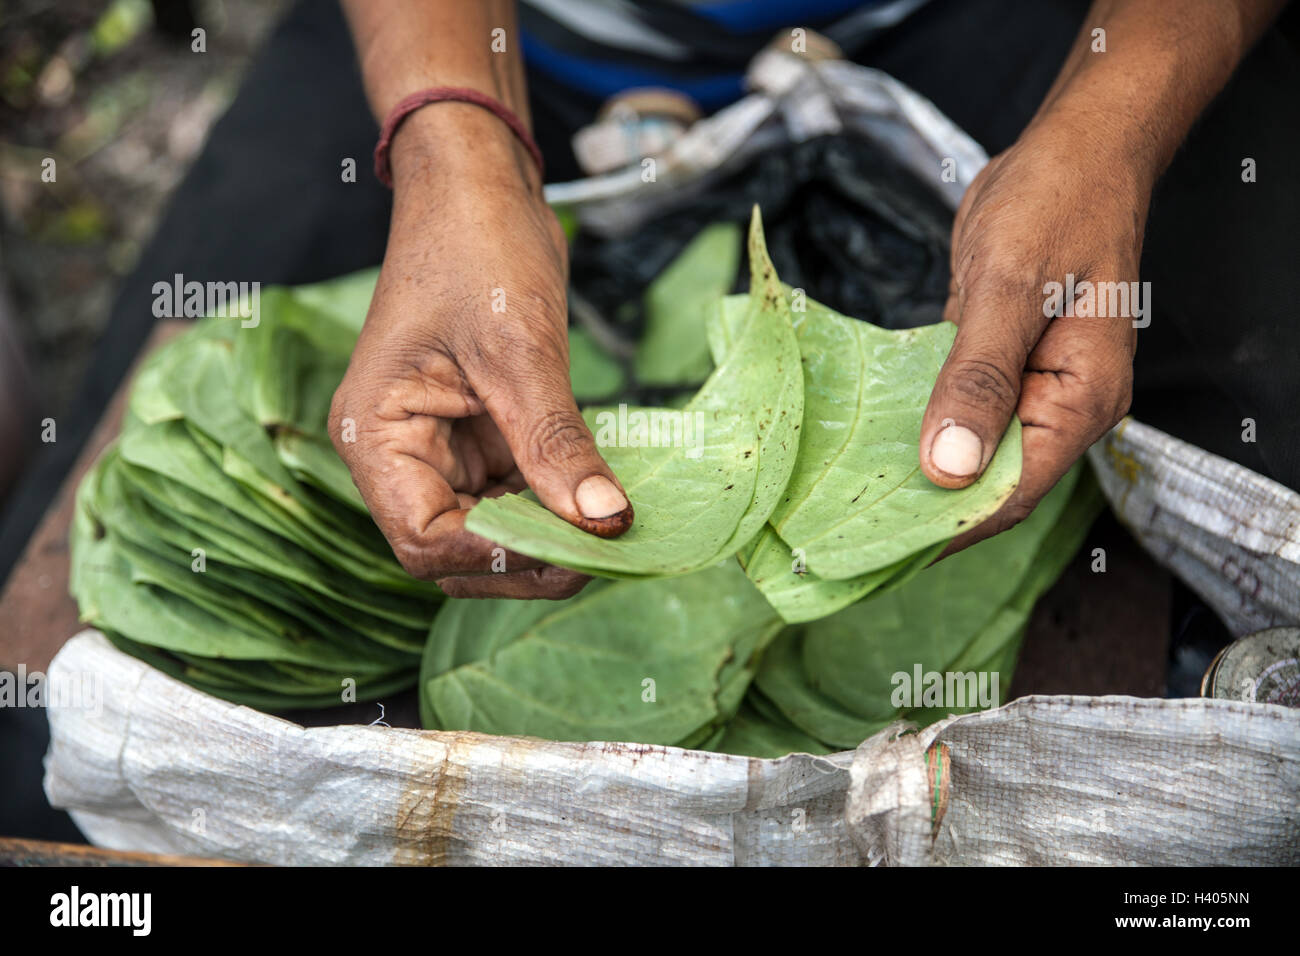 Street vendor in Kolkata, India, sorting leaves Stock Photo